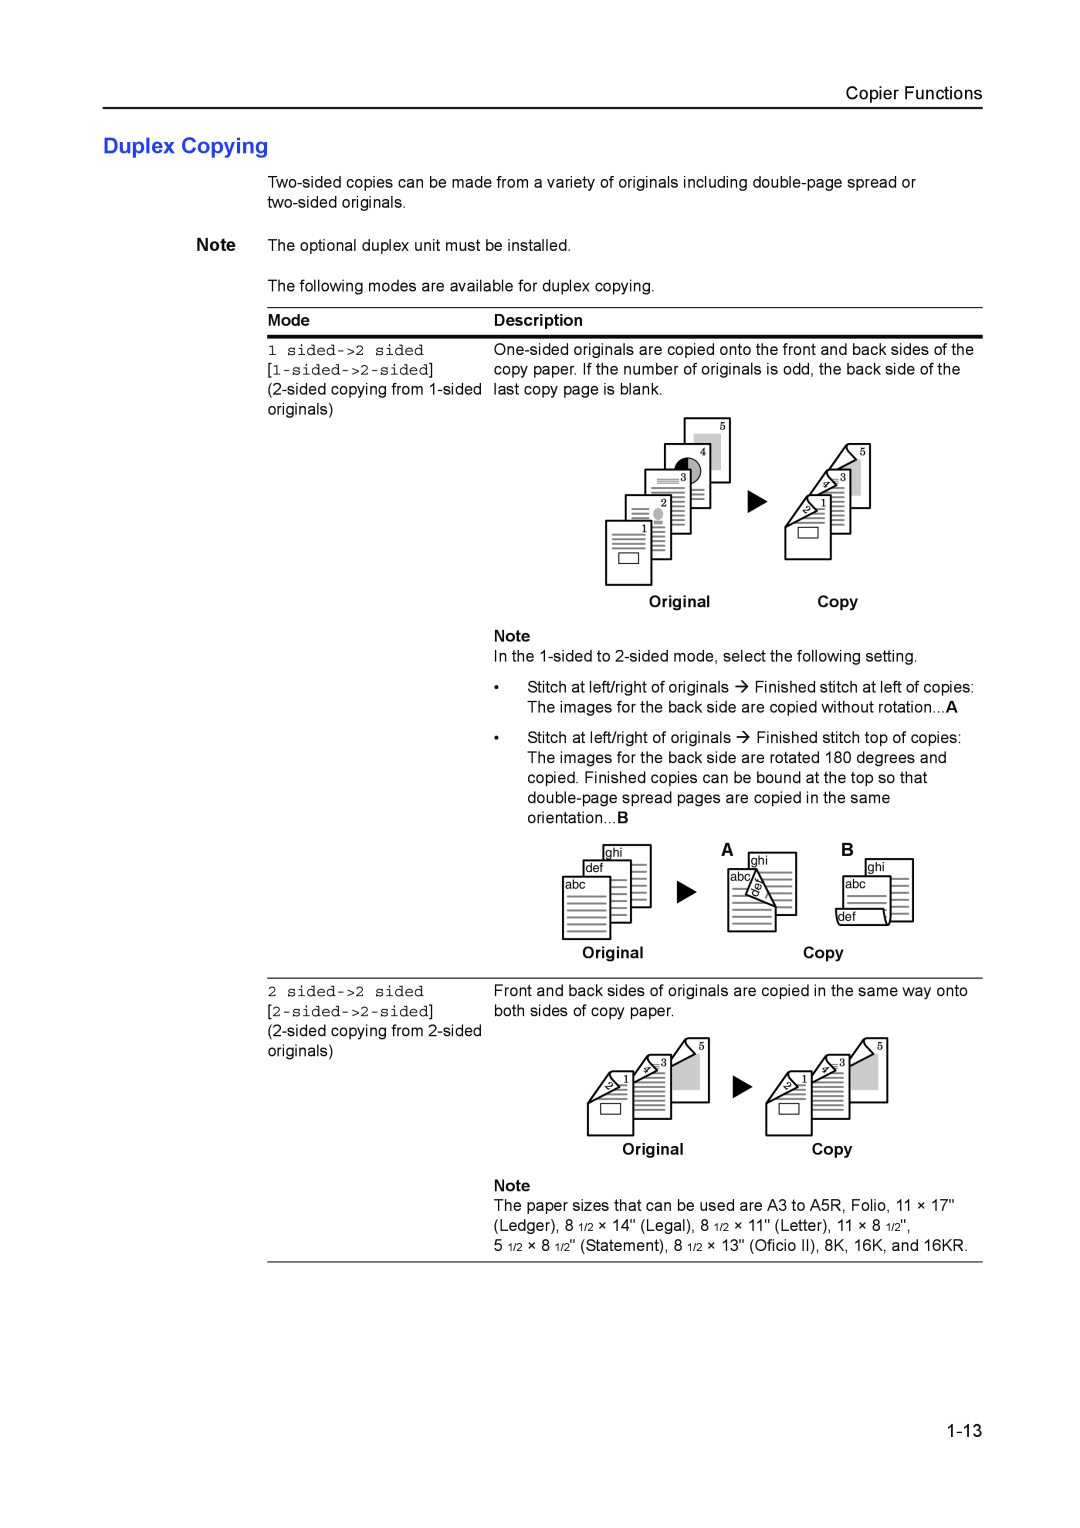 Kyocera 2050, 1650, 2550 manual Duplex Copying, 1-13, Copier Functions 